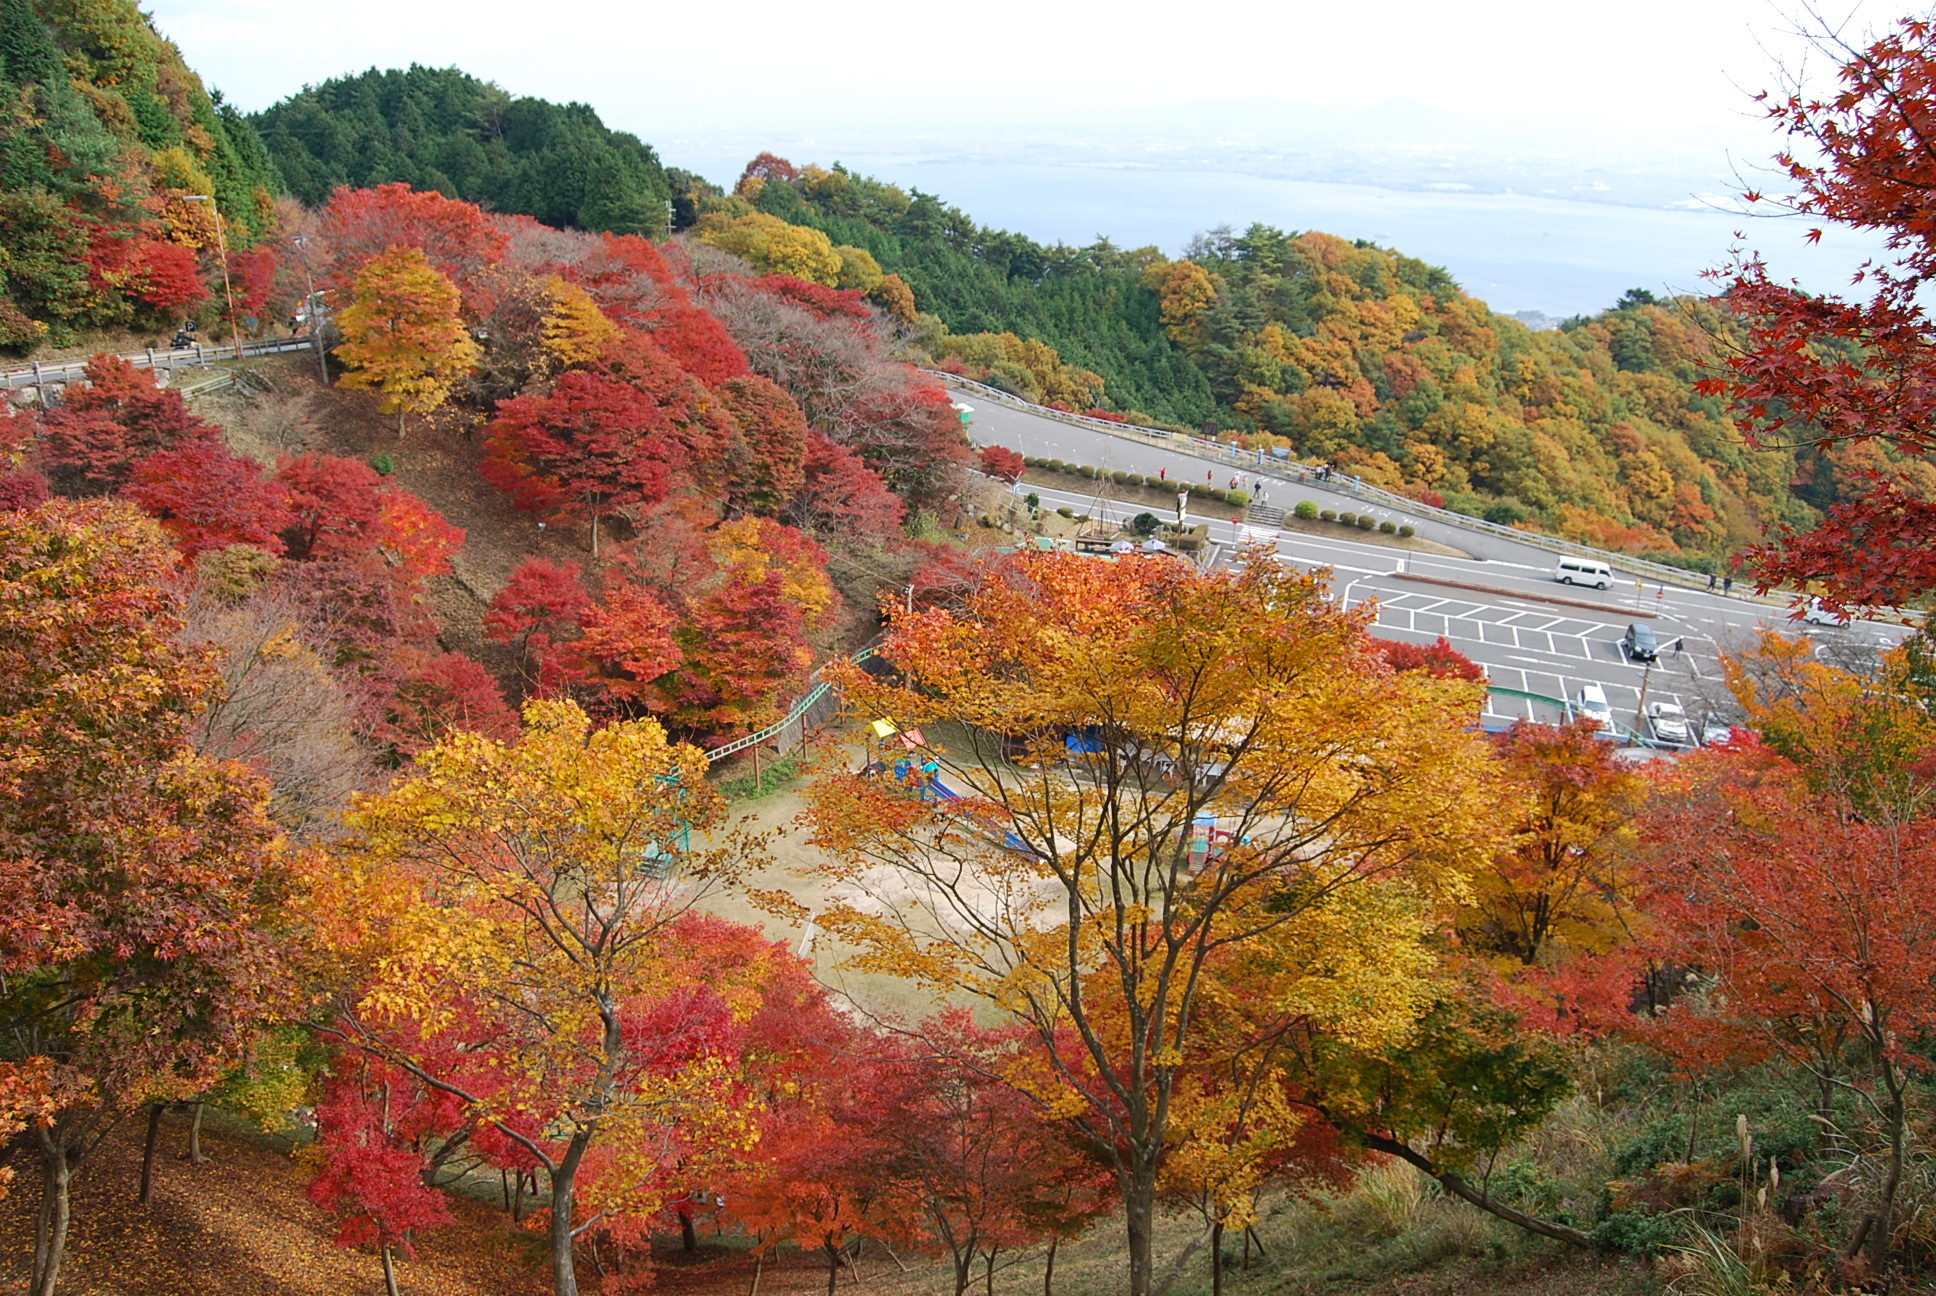 「びわ湖の絶景と紅葉を楽しむ秋のスペシャルキャンペーン」を開催